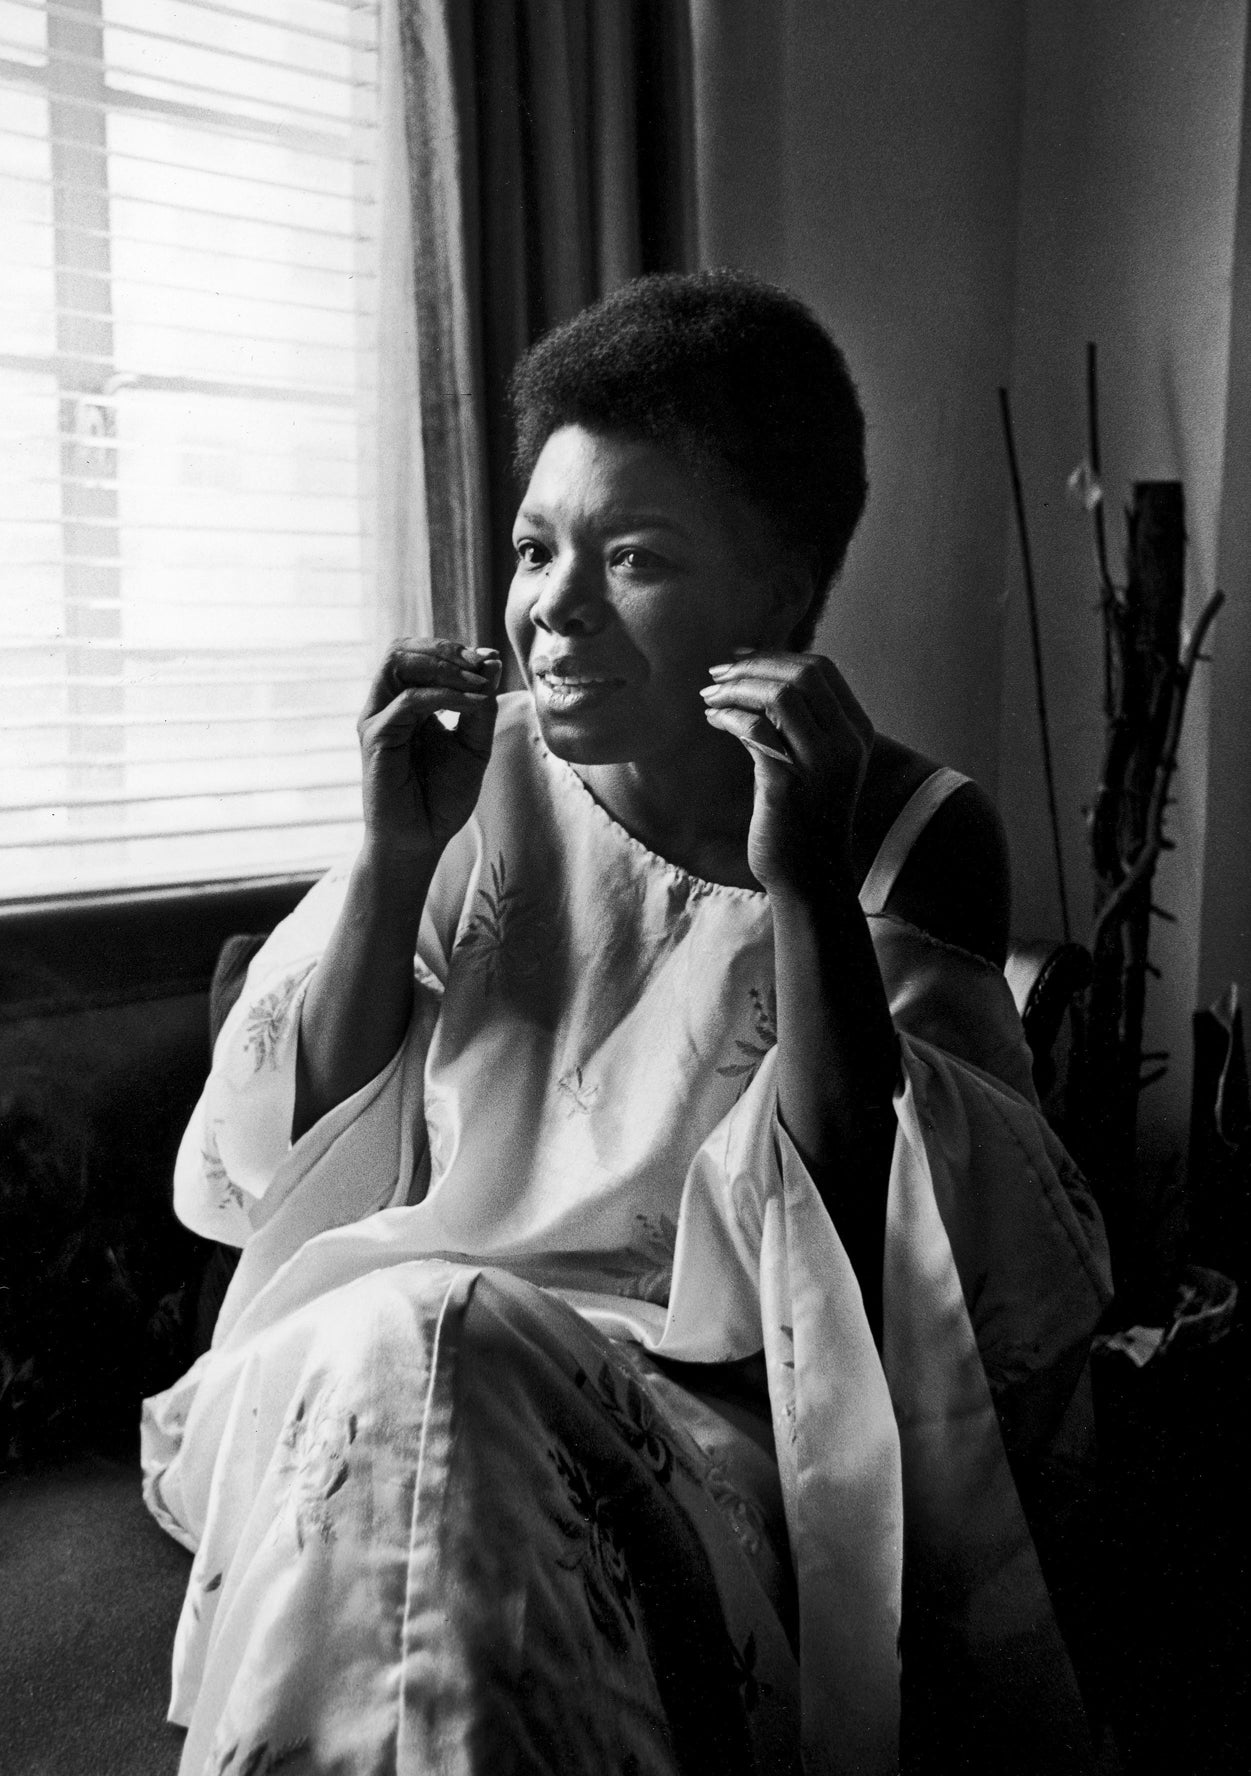 Beloved Author and Poet Dr. Maya Angelou Dies at 86